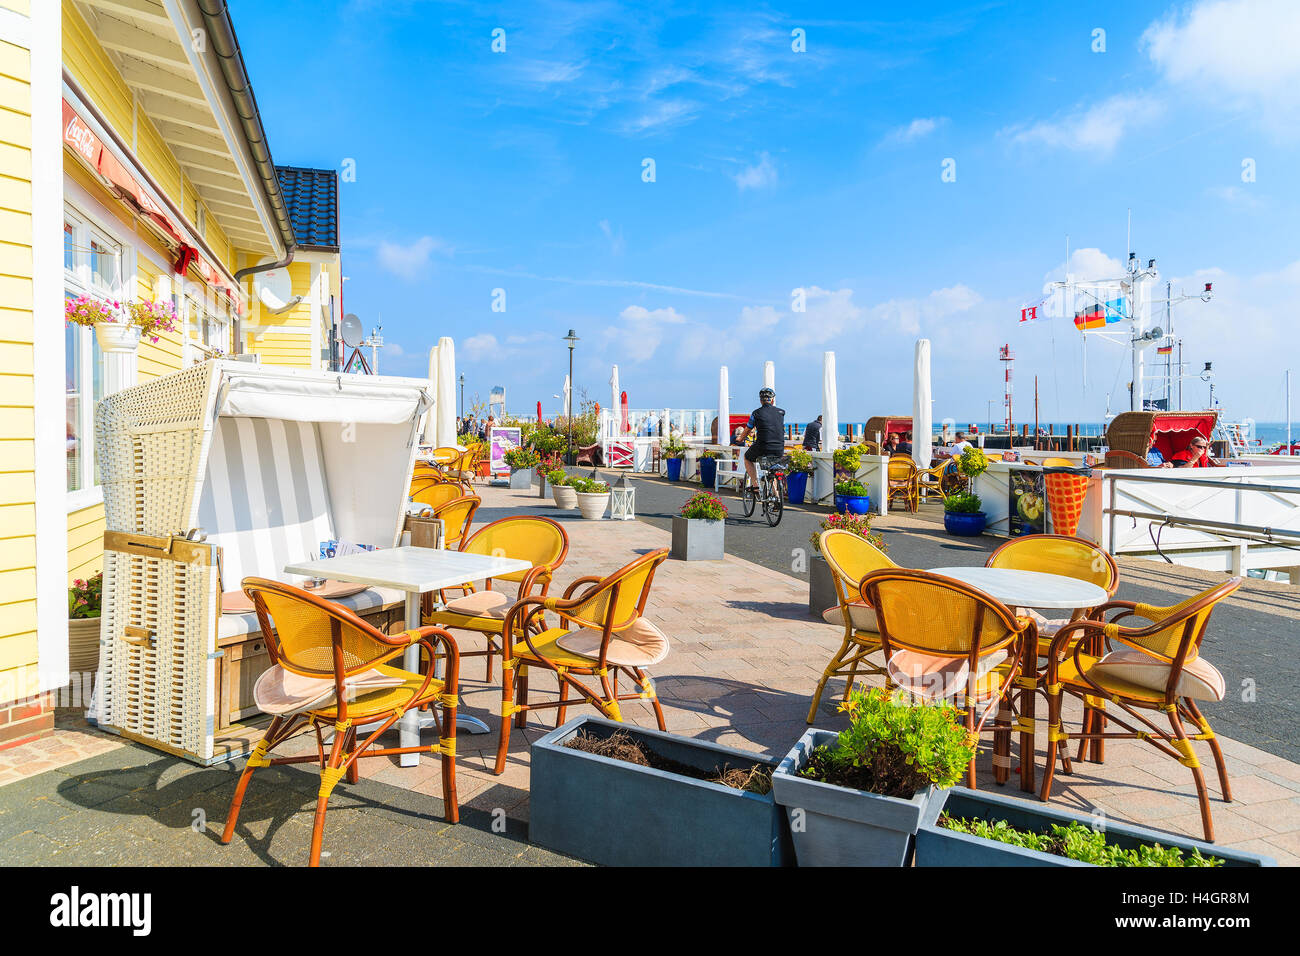 Isola di Sylt, Germania - Settembre 6, 2016: ristorante tavole in Elenco porto sulla costa settentrionale dell'isola di Sylt, Germania. Foto Stock